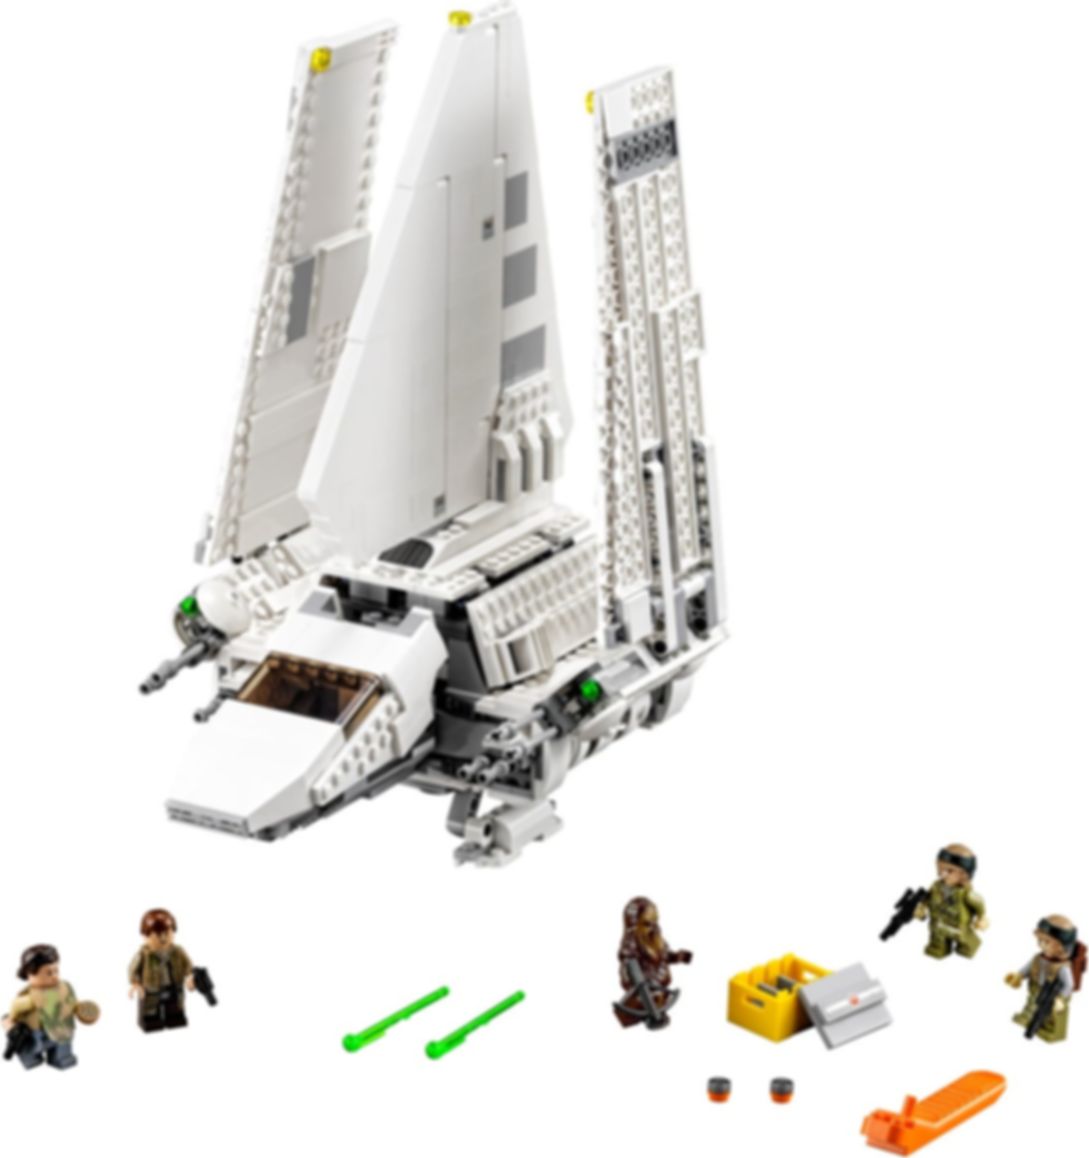 LEGO® Star Wars Imperial Shuttle Tydirium™ partes